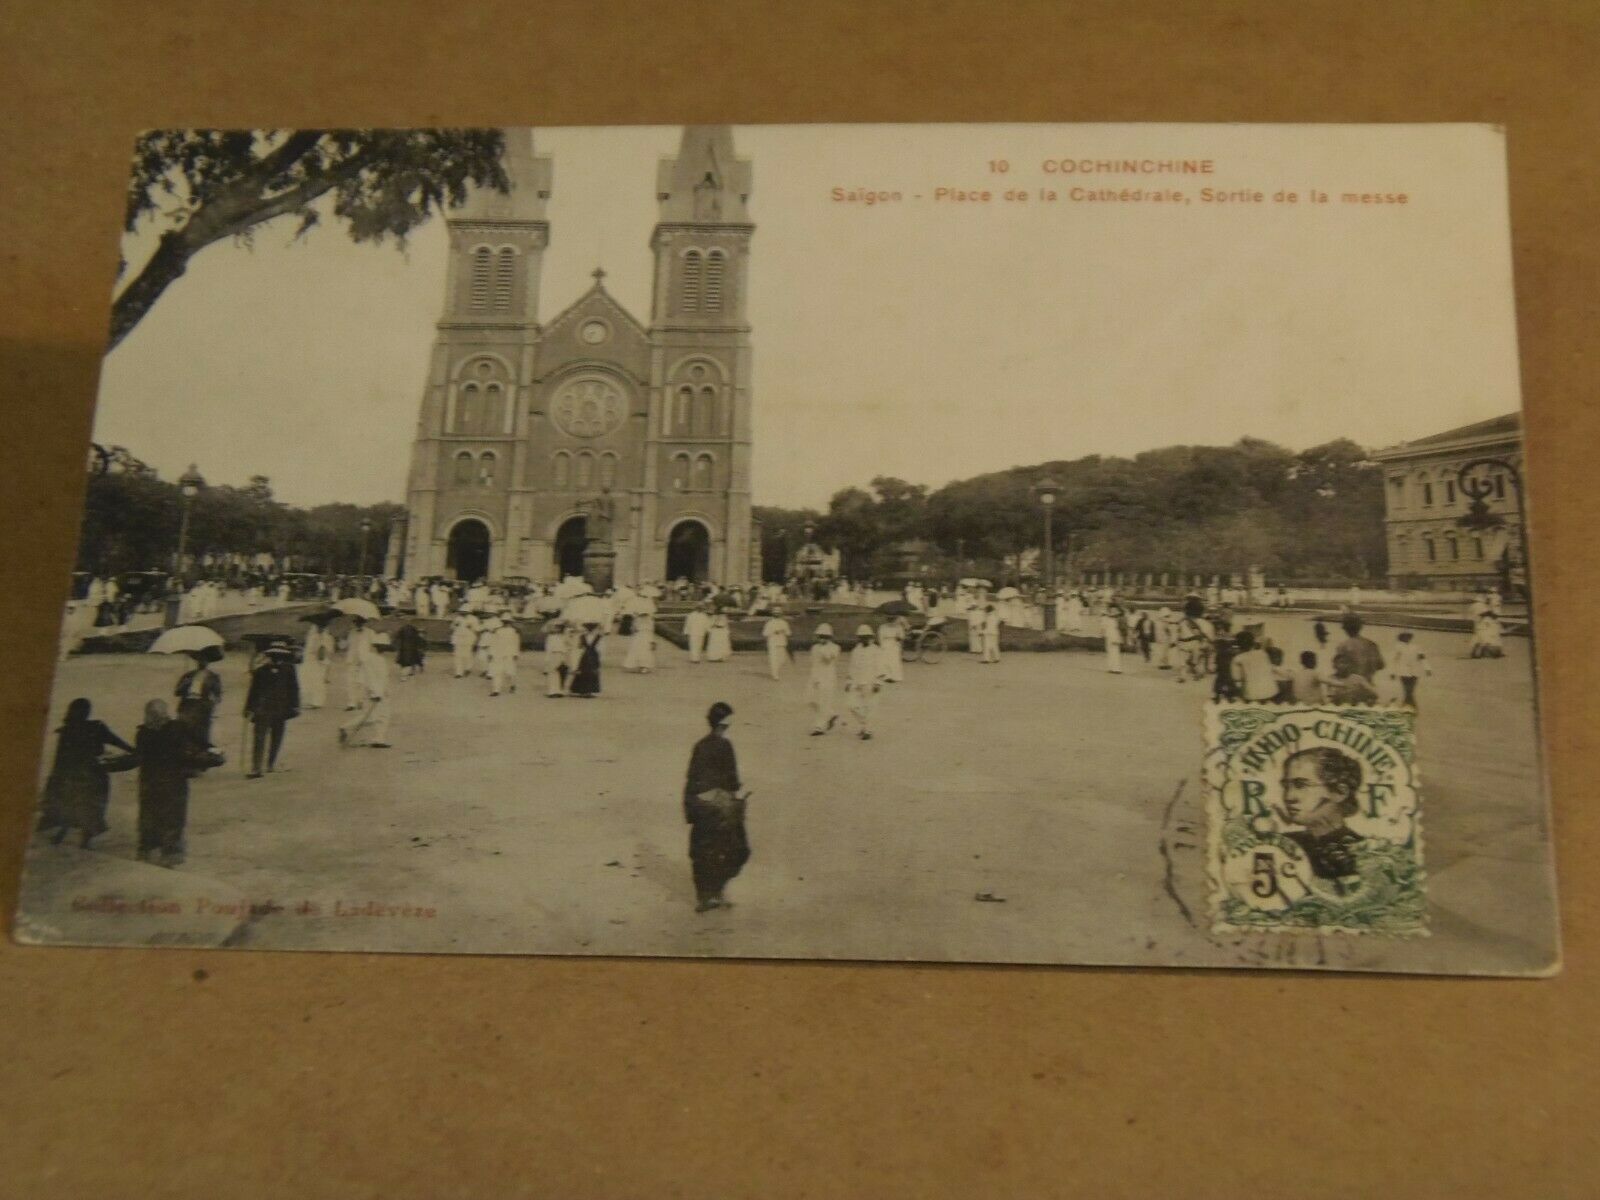 Place De La Cathedrale, Sortie De La Messe, Indo-china Postcard 9/1